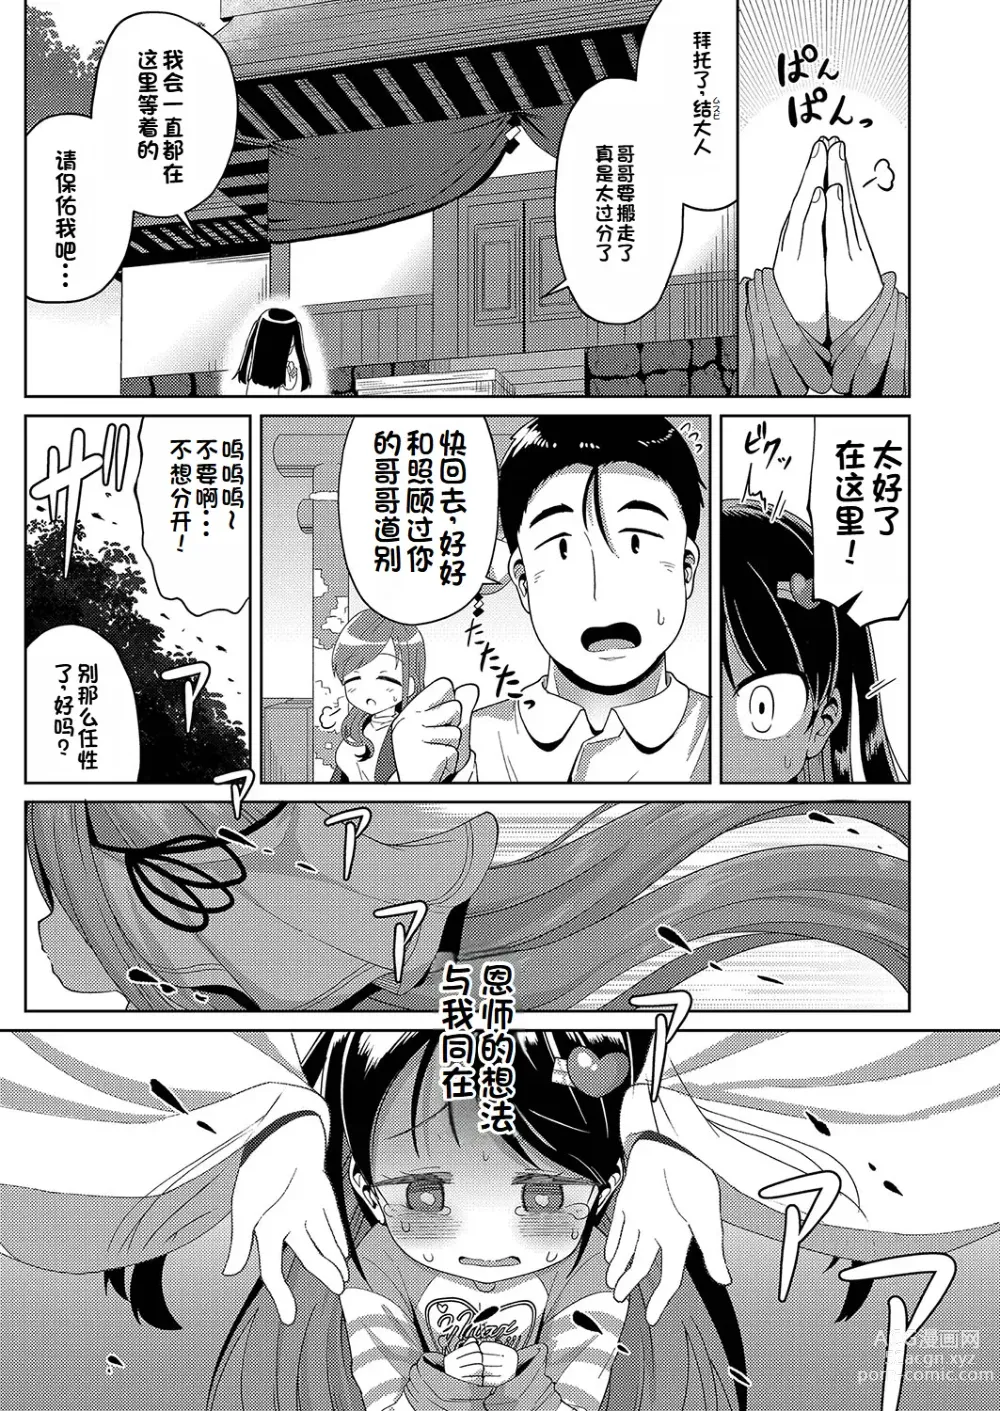 Page 37 of manga Yui